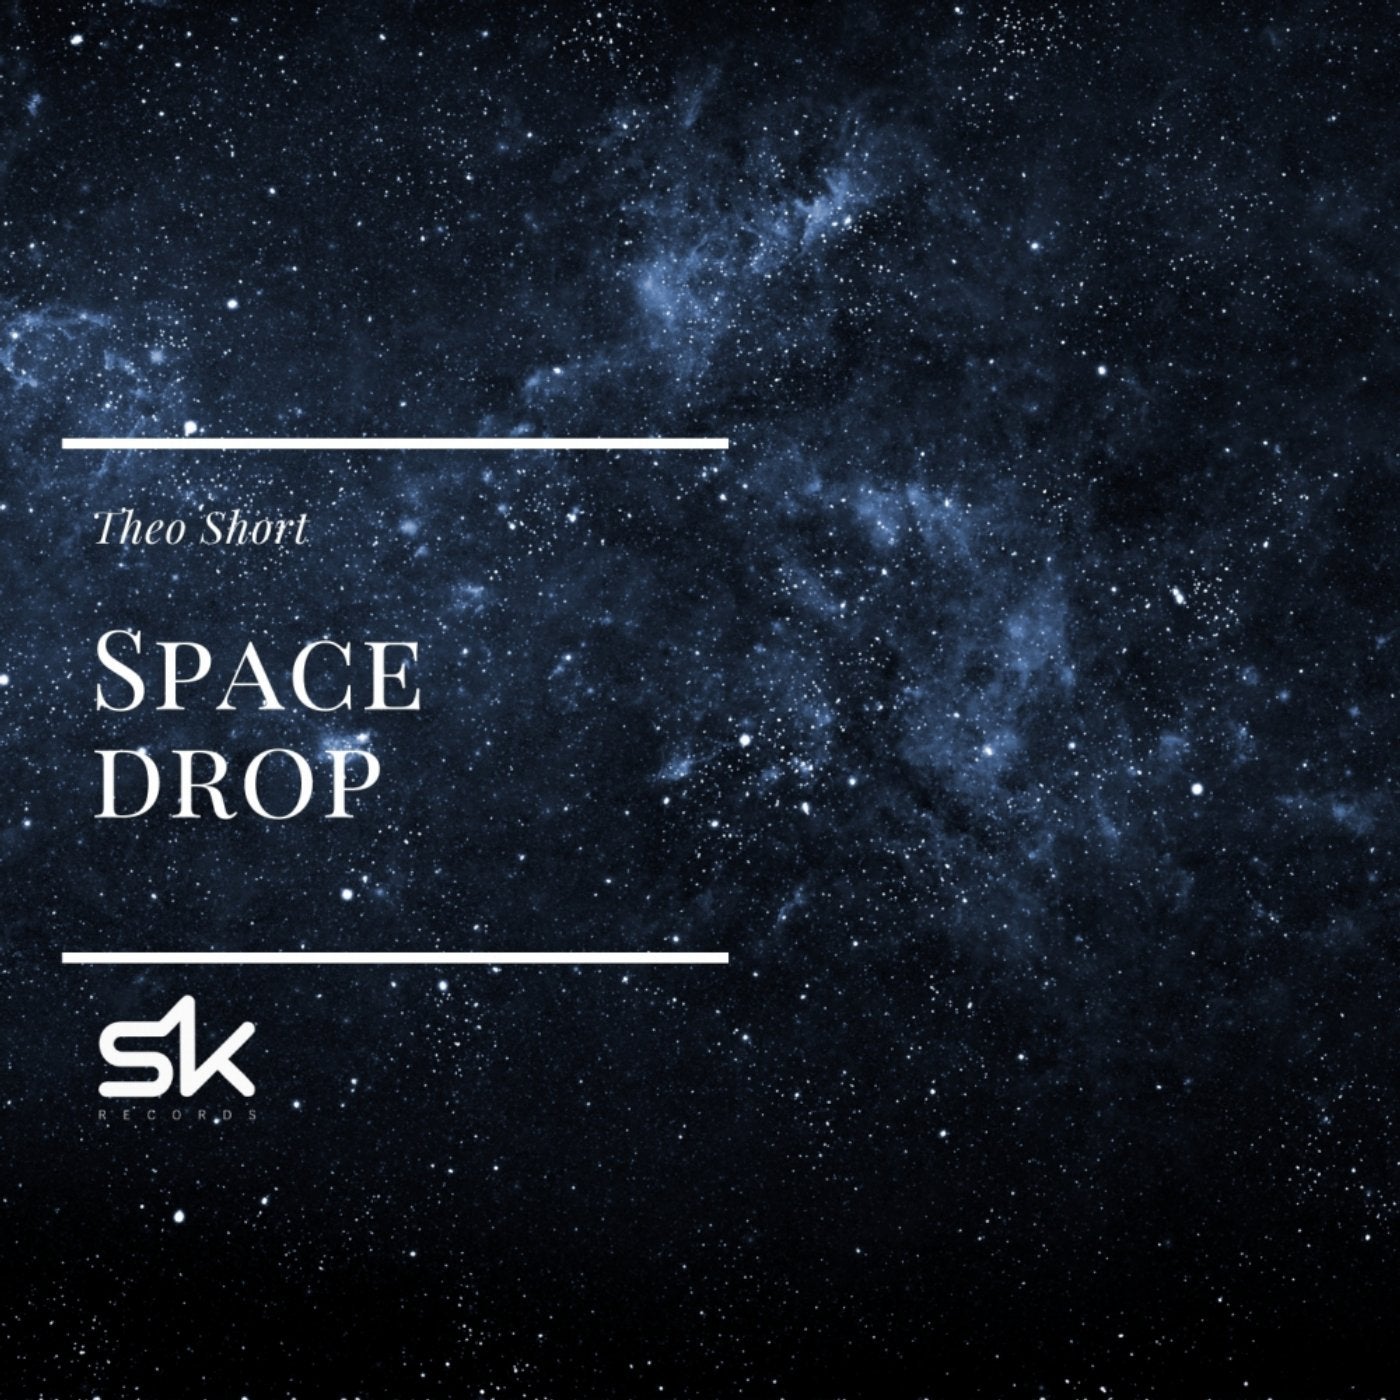 Space Drop